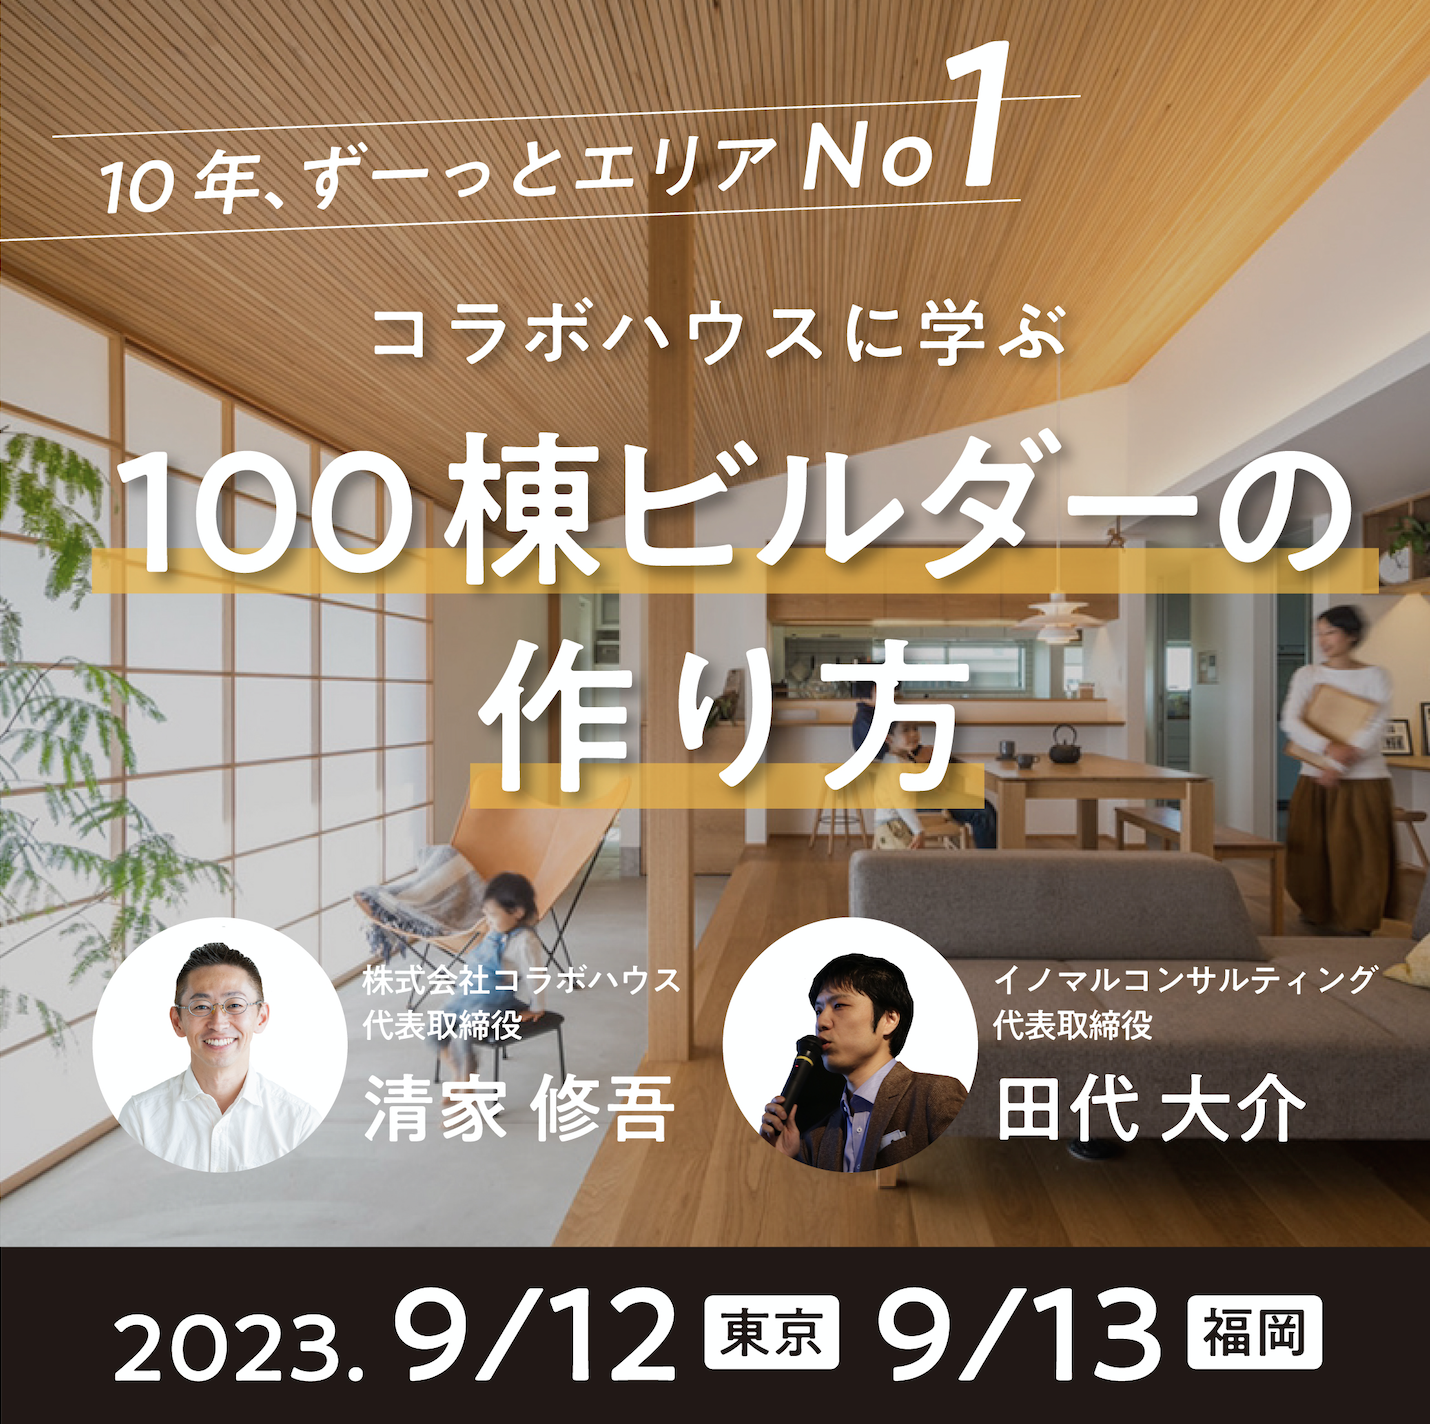 2023年9月12東京・13福岡 「（新）100棟ビルダーの作り方」in コラボハウス